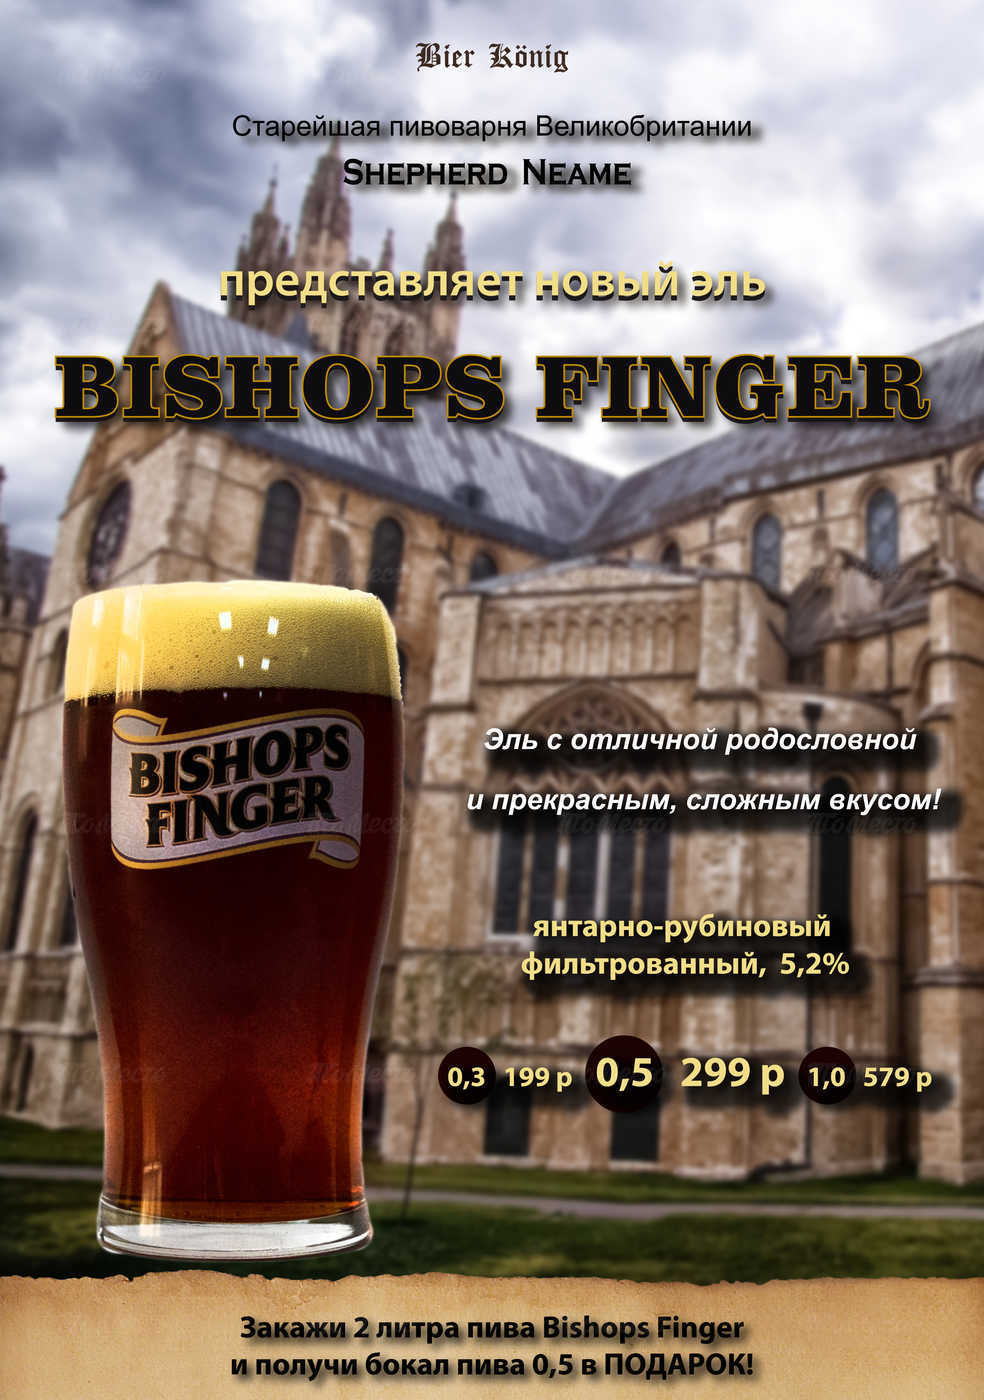 Подарок при покупке пенного Bishops Finger